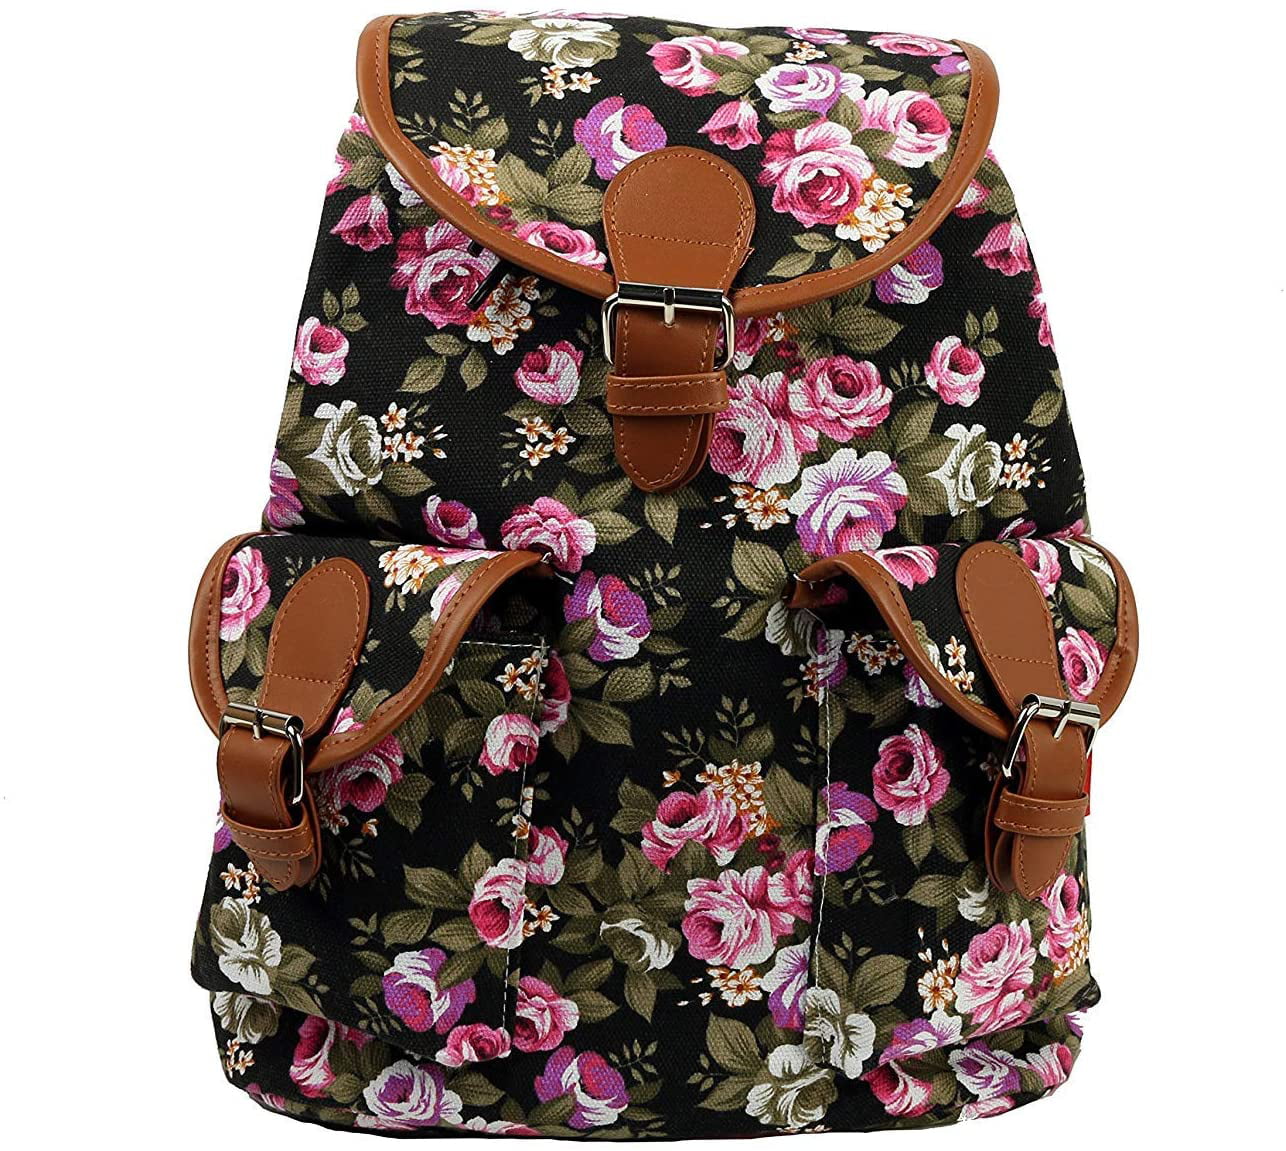 Women Backpack Vintage Floral Shoulder Bags Tote Handbag Travel Rucksack Satchel 